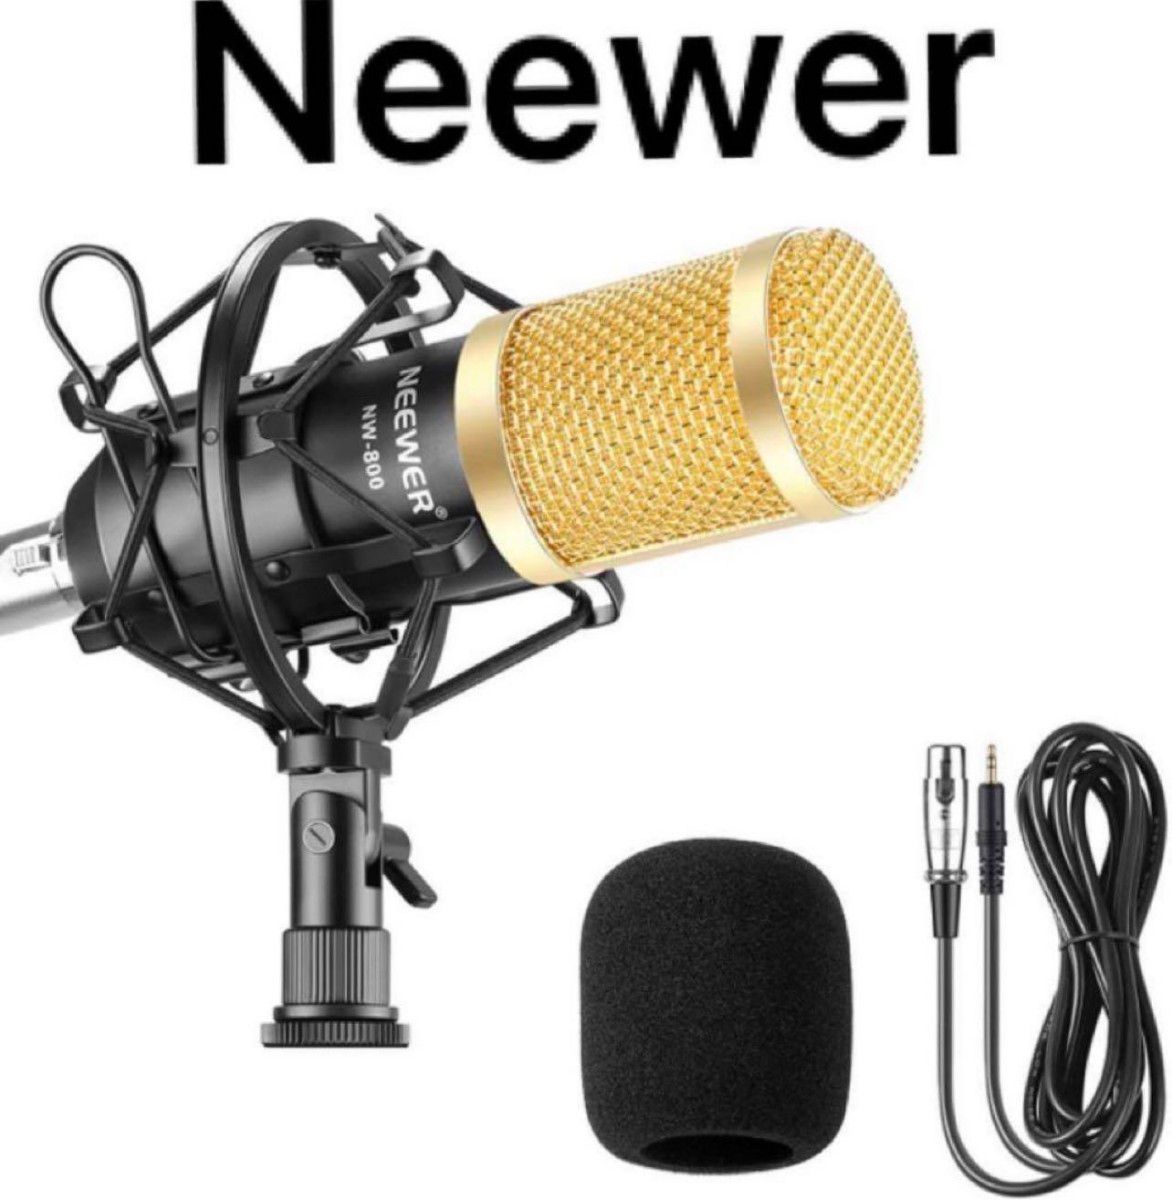 Neewer NW-800コンデンサーマイクセット スタジオ放送レコーディング用